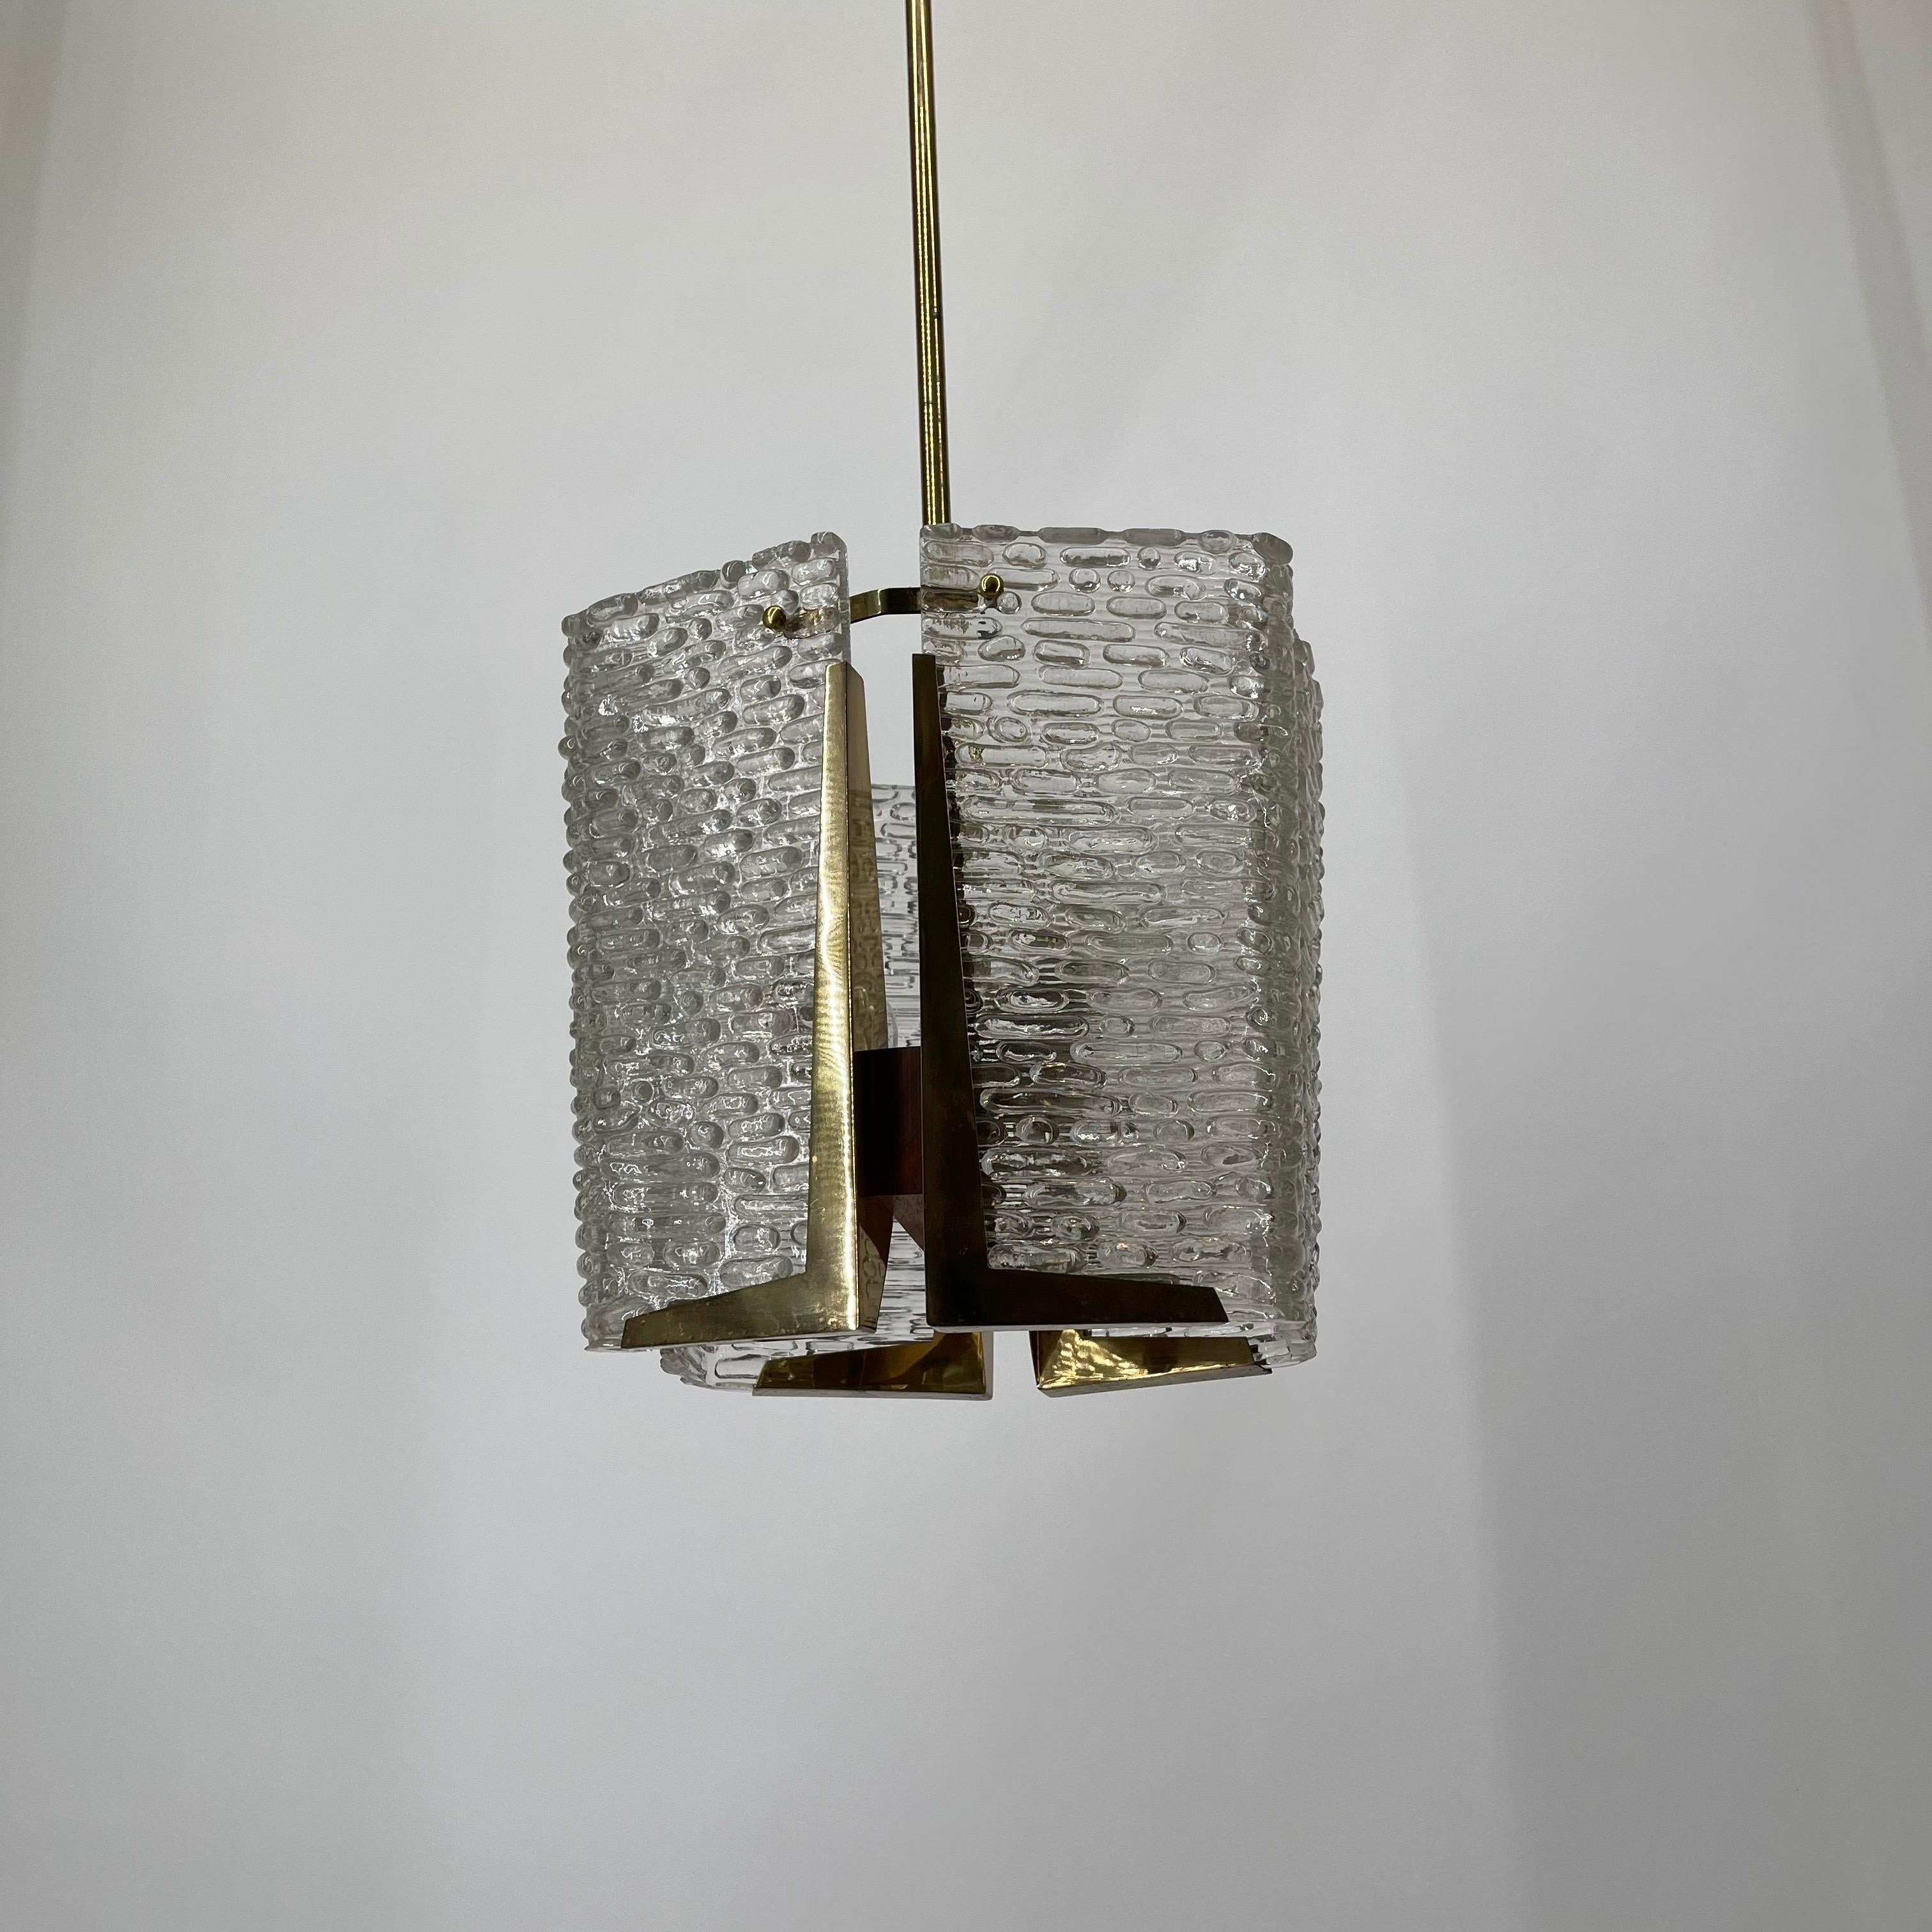 J.T. Kalmar Laterne glass chandelier, Austria, 1960s.